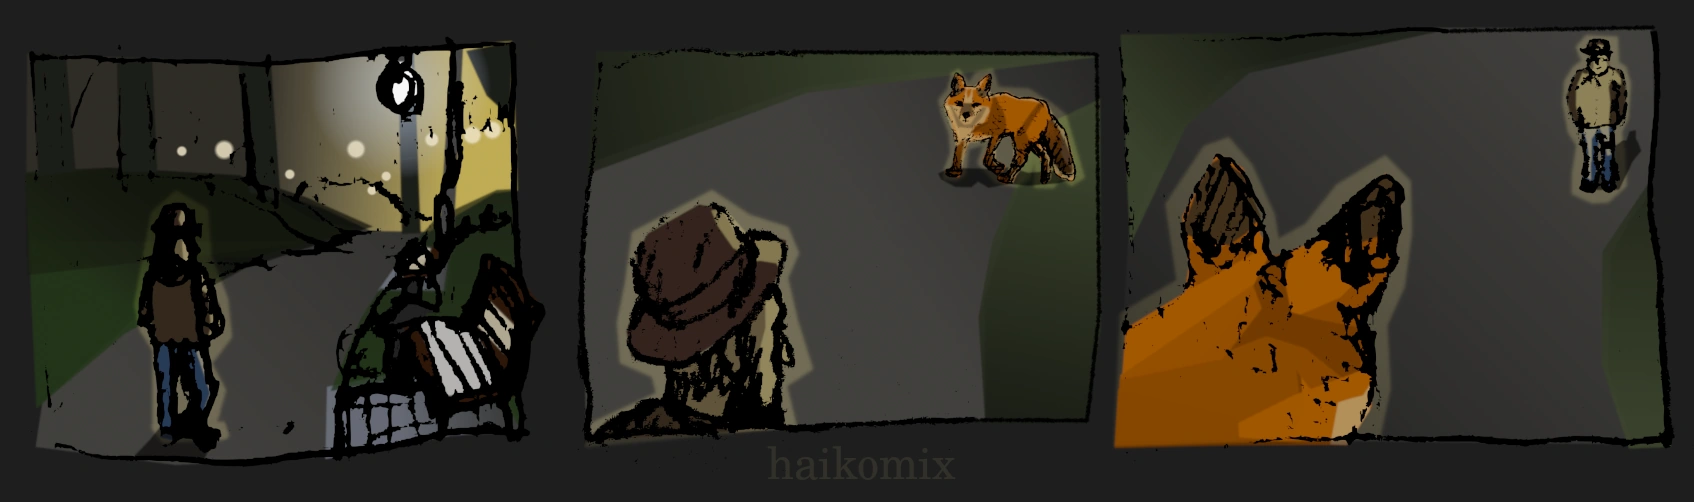 haikomix about a fox